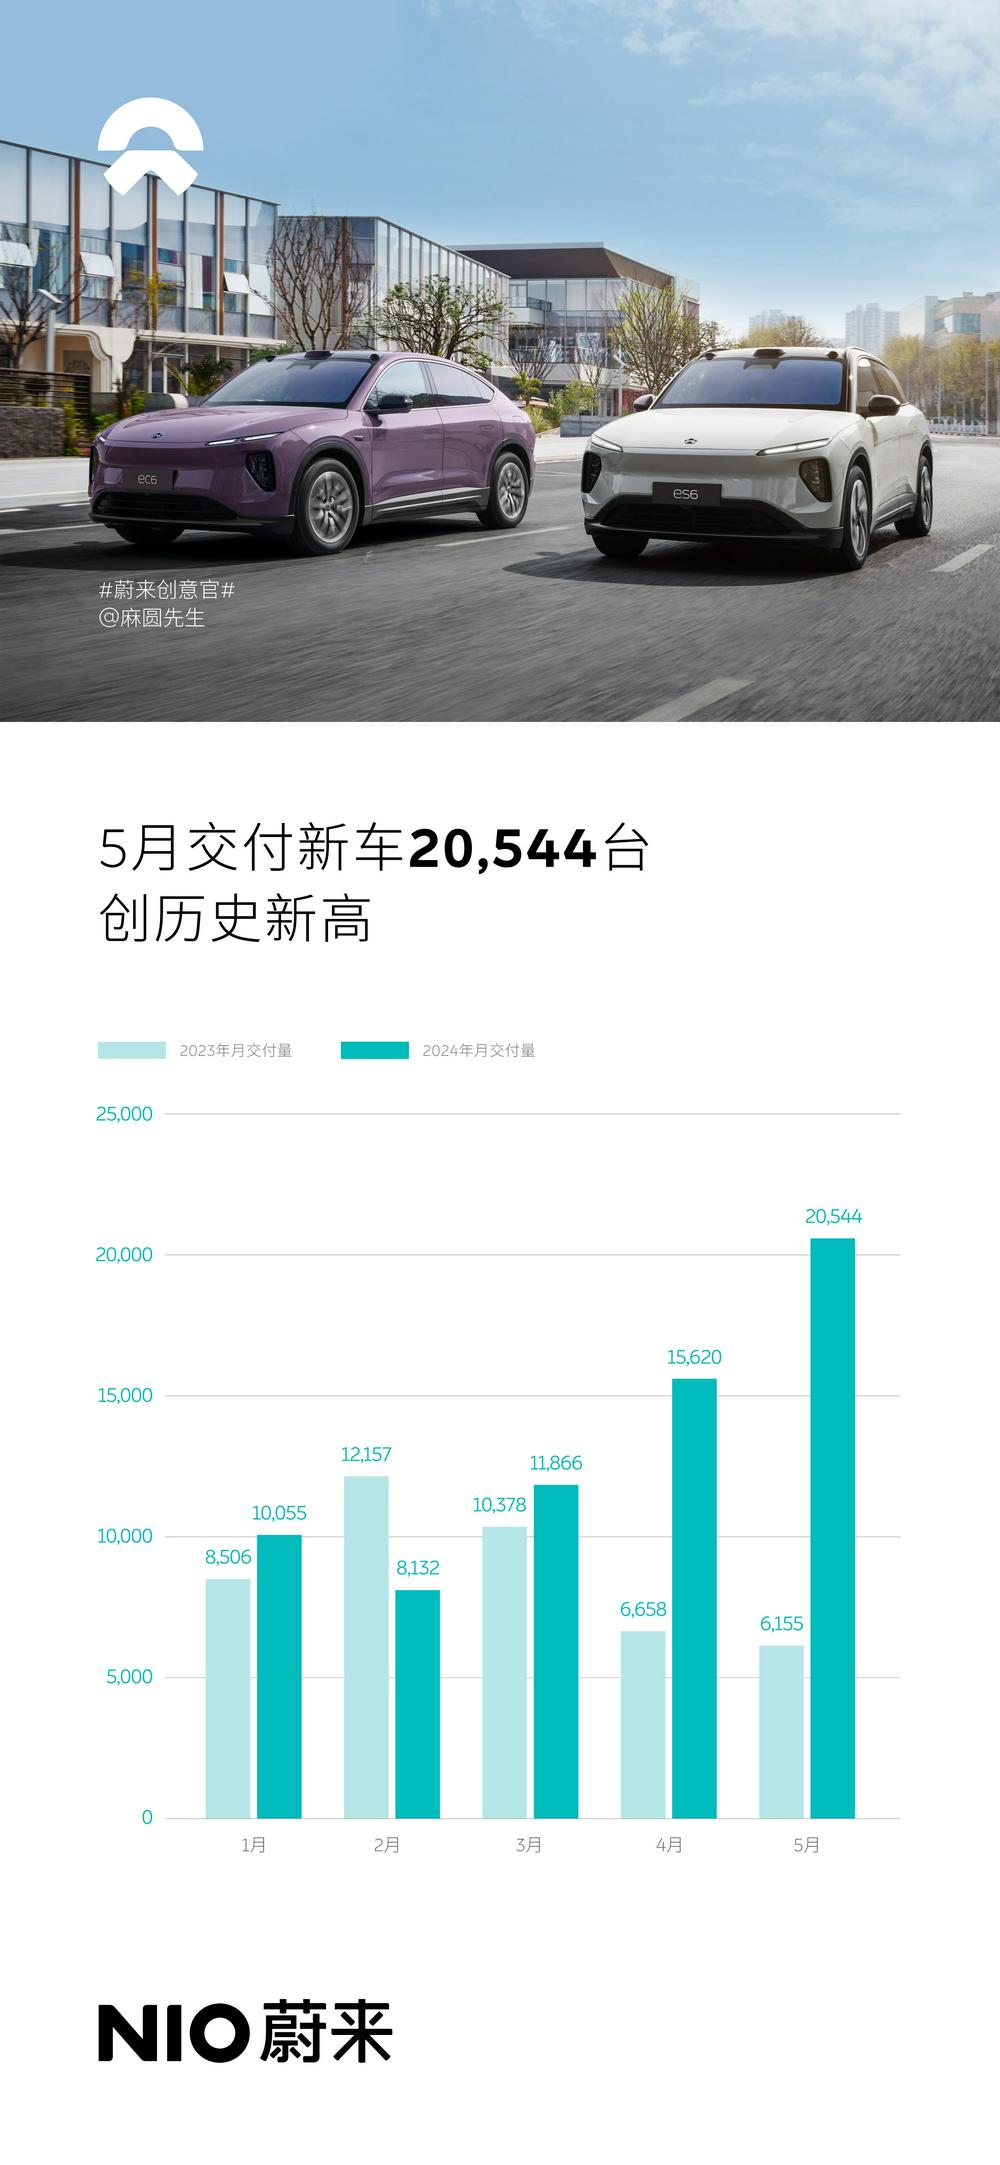 蔚来发布5月数据交付新车20544台创历史新高 同比增长233.8% 此前数据遭杜撰多交付216台